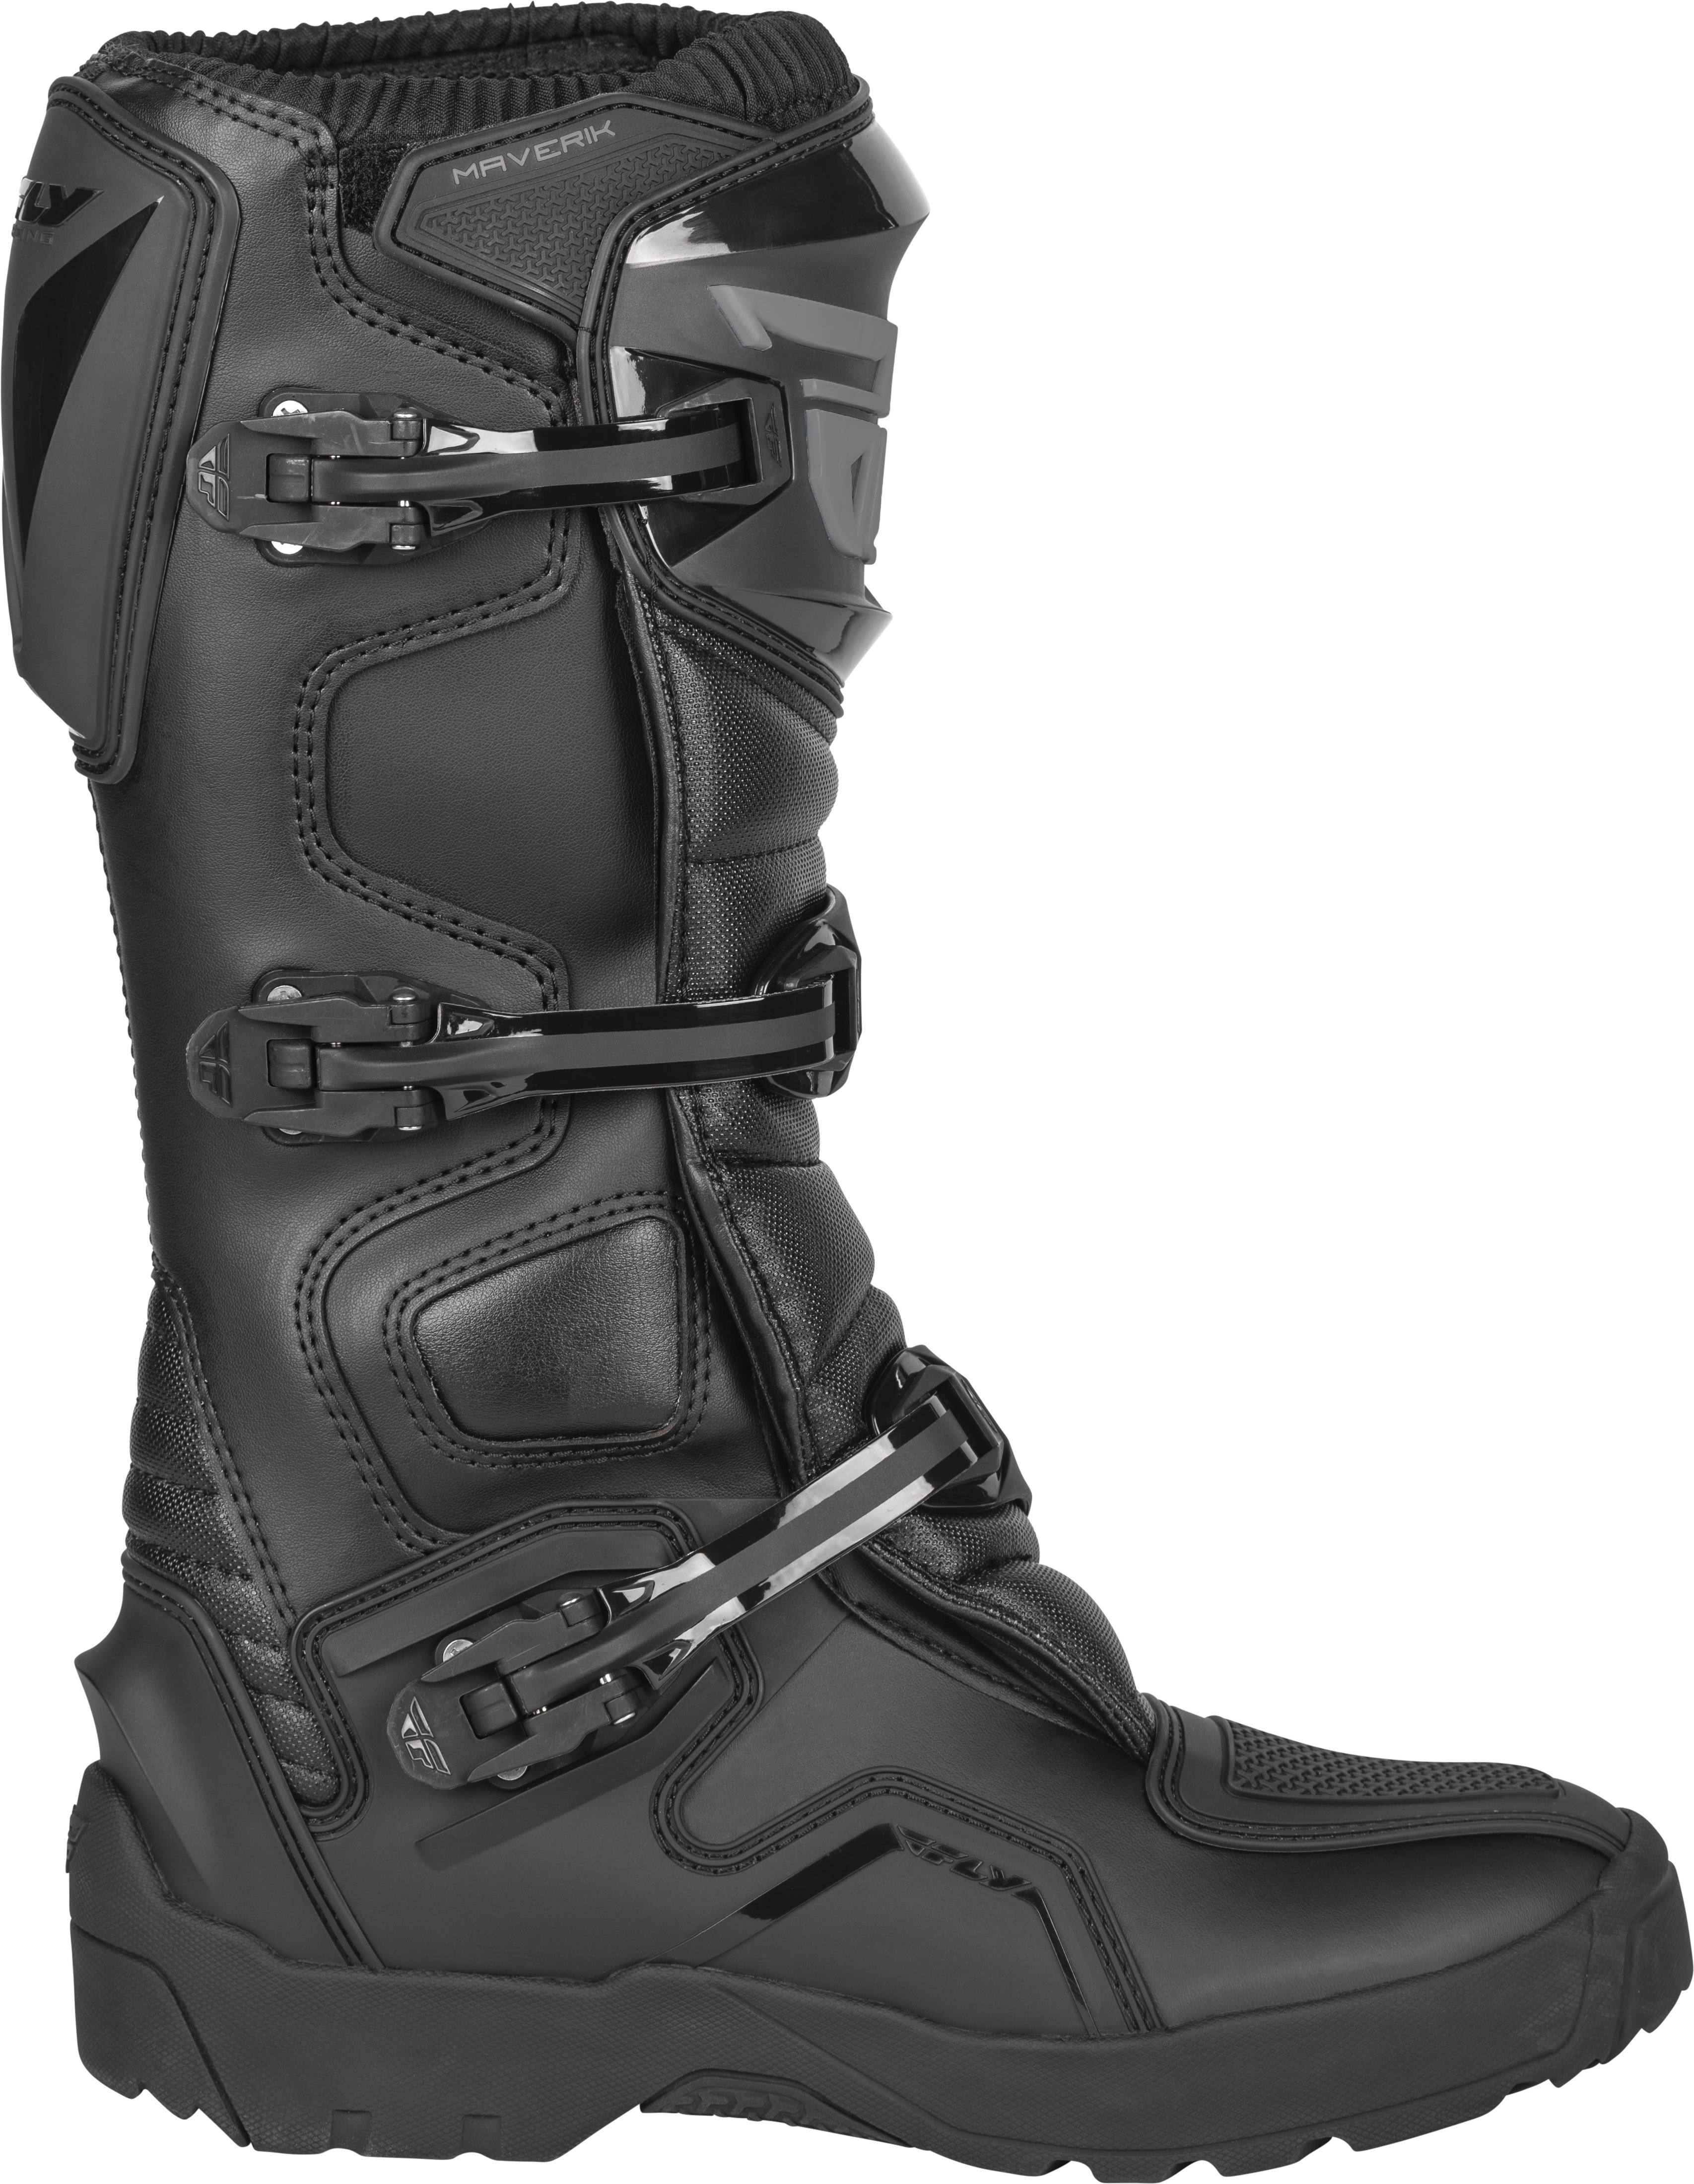 Maverik Enduro Boot Black Size 9 - Click Image to Close